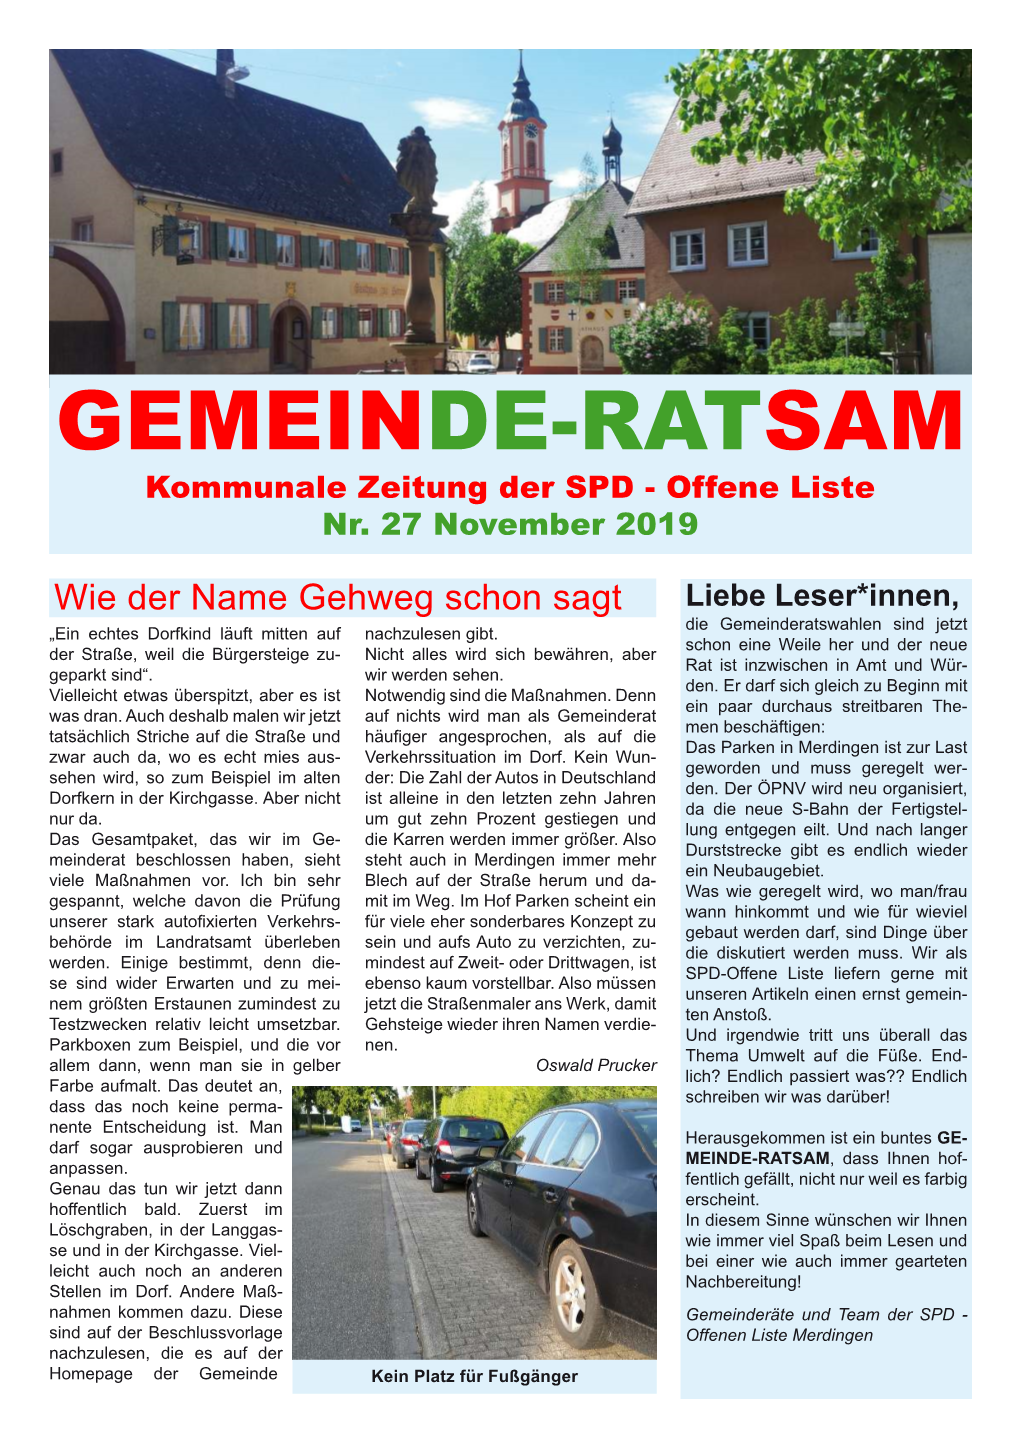 GEMEINDE-RATSAM Kommunale Zeitung Der SPD - Offene Liste Nr